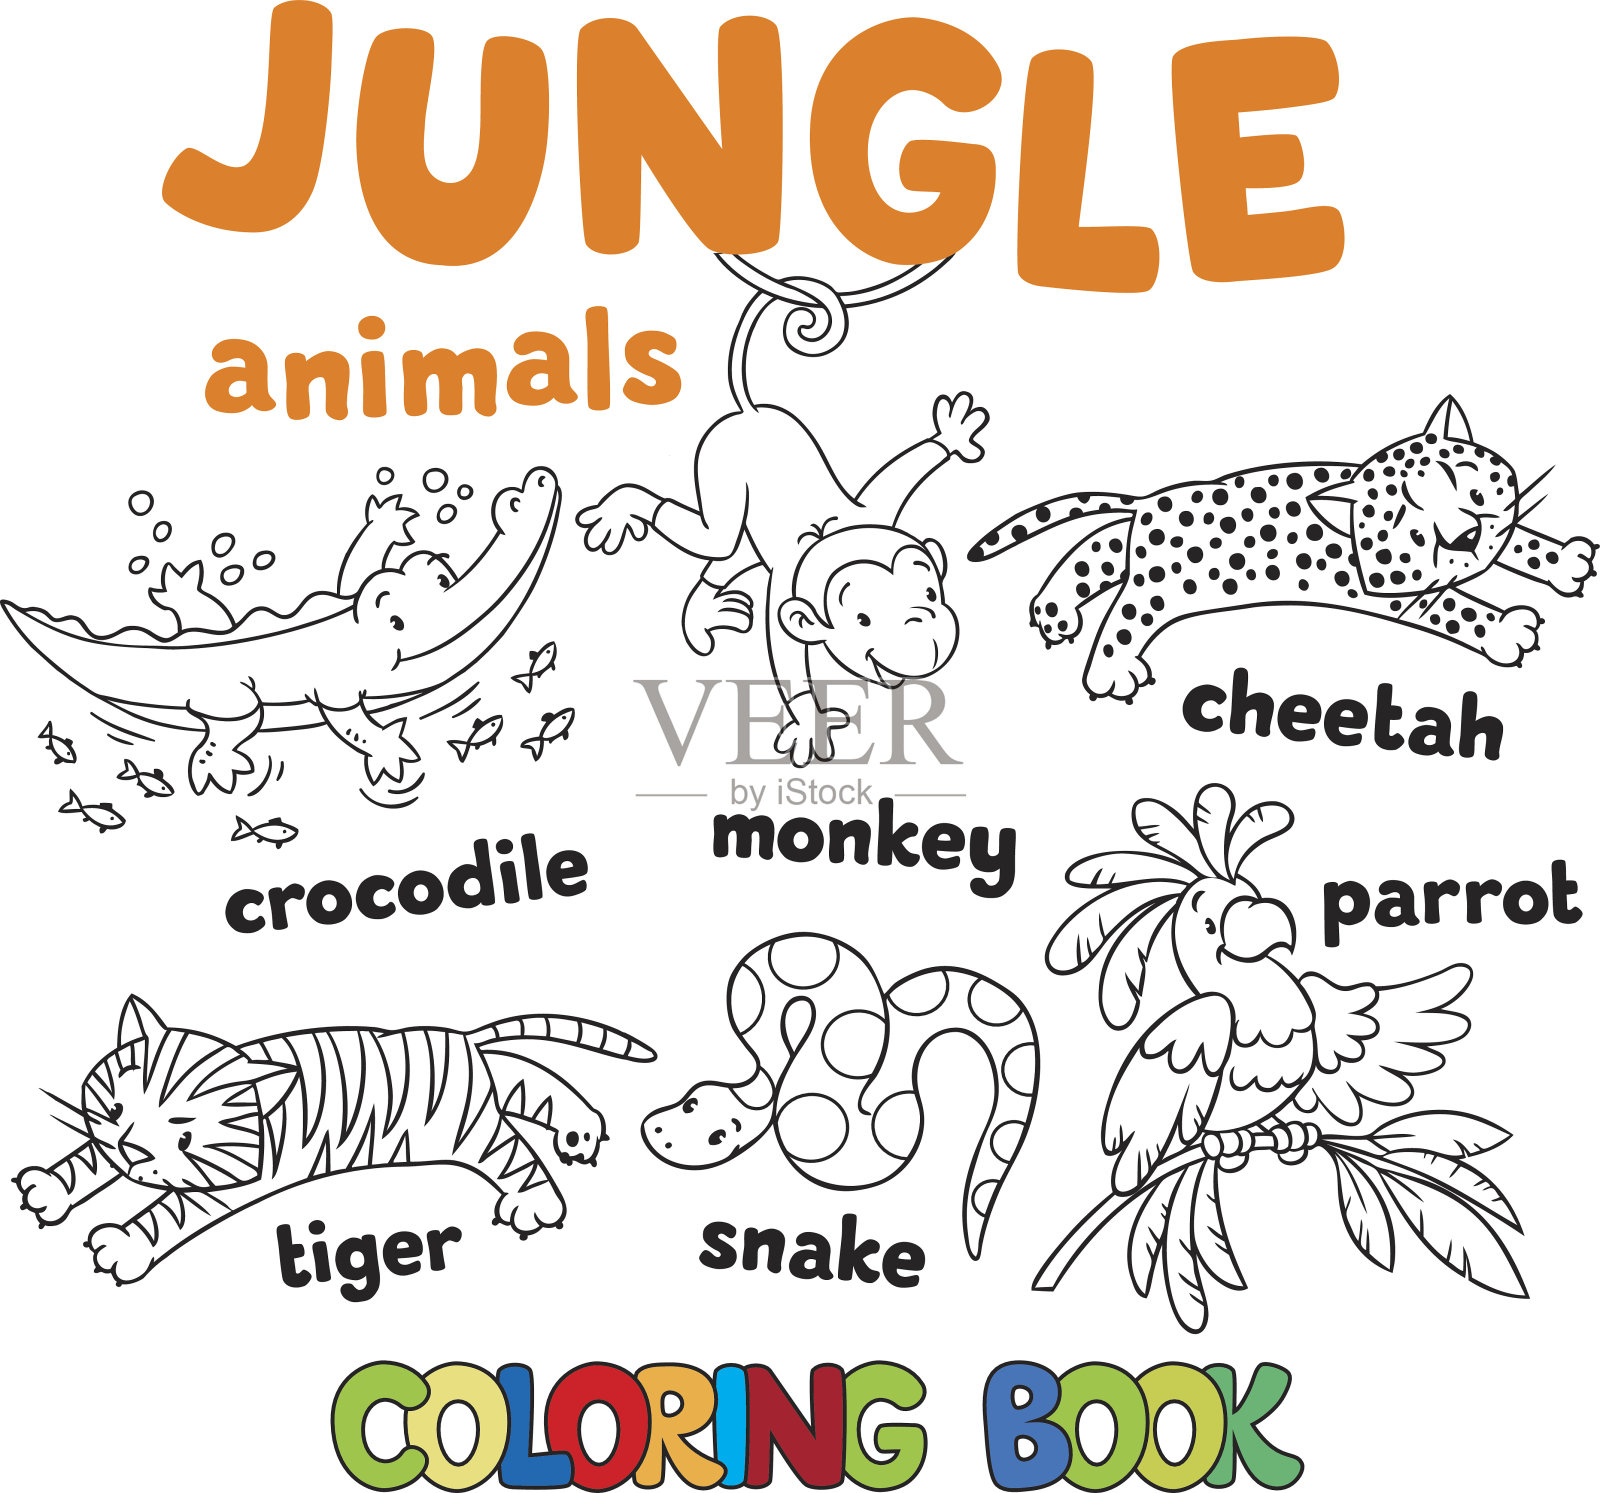 一套有趣的丛林动物着色书插画图片素材